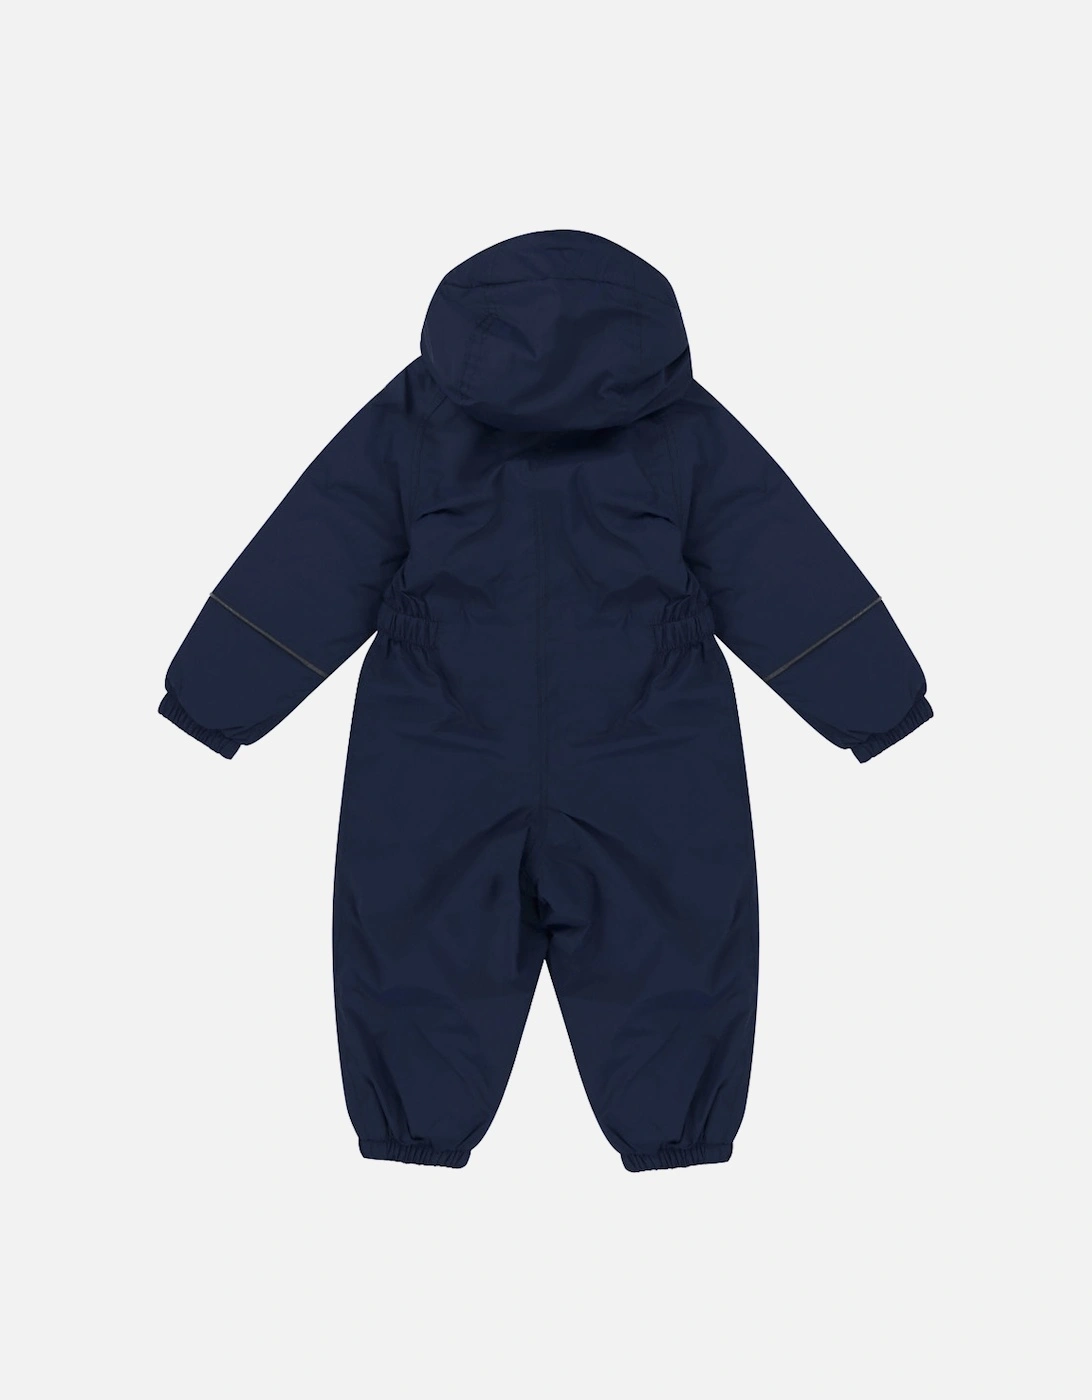 Boys & Girls Splosh III Baby / Toddler Waterproof Bodysuit